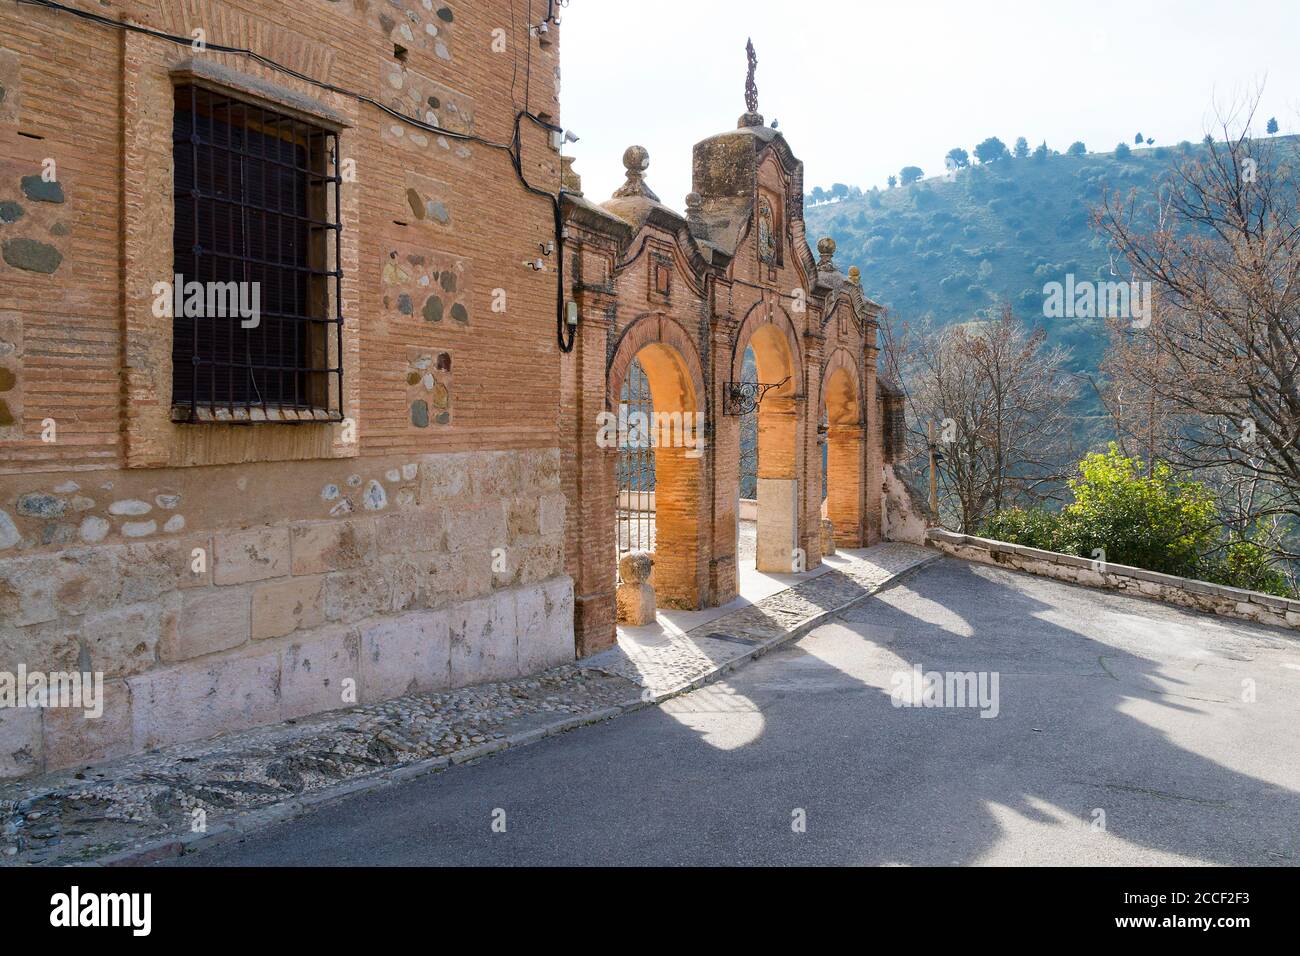 Espagne, Grenade, Sacromonte, Abadia del Sacromonte, monastère, portail Banque D'Images